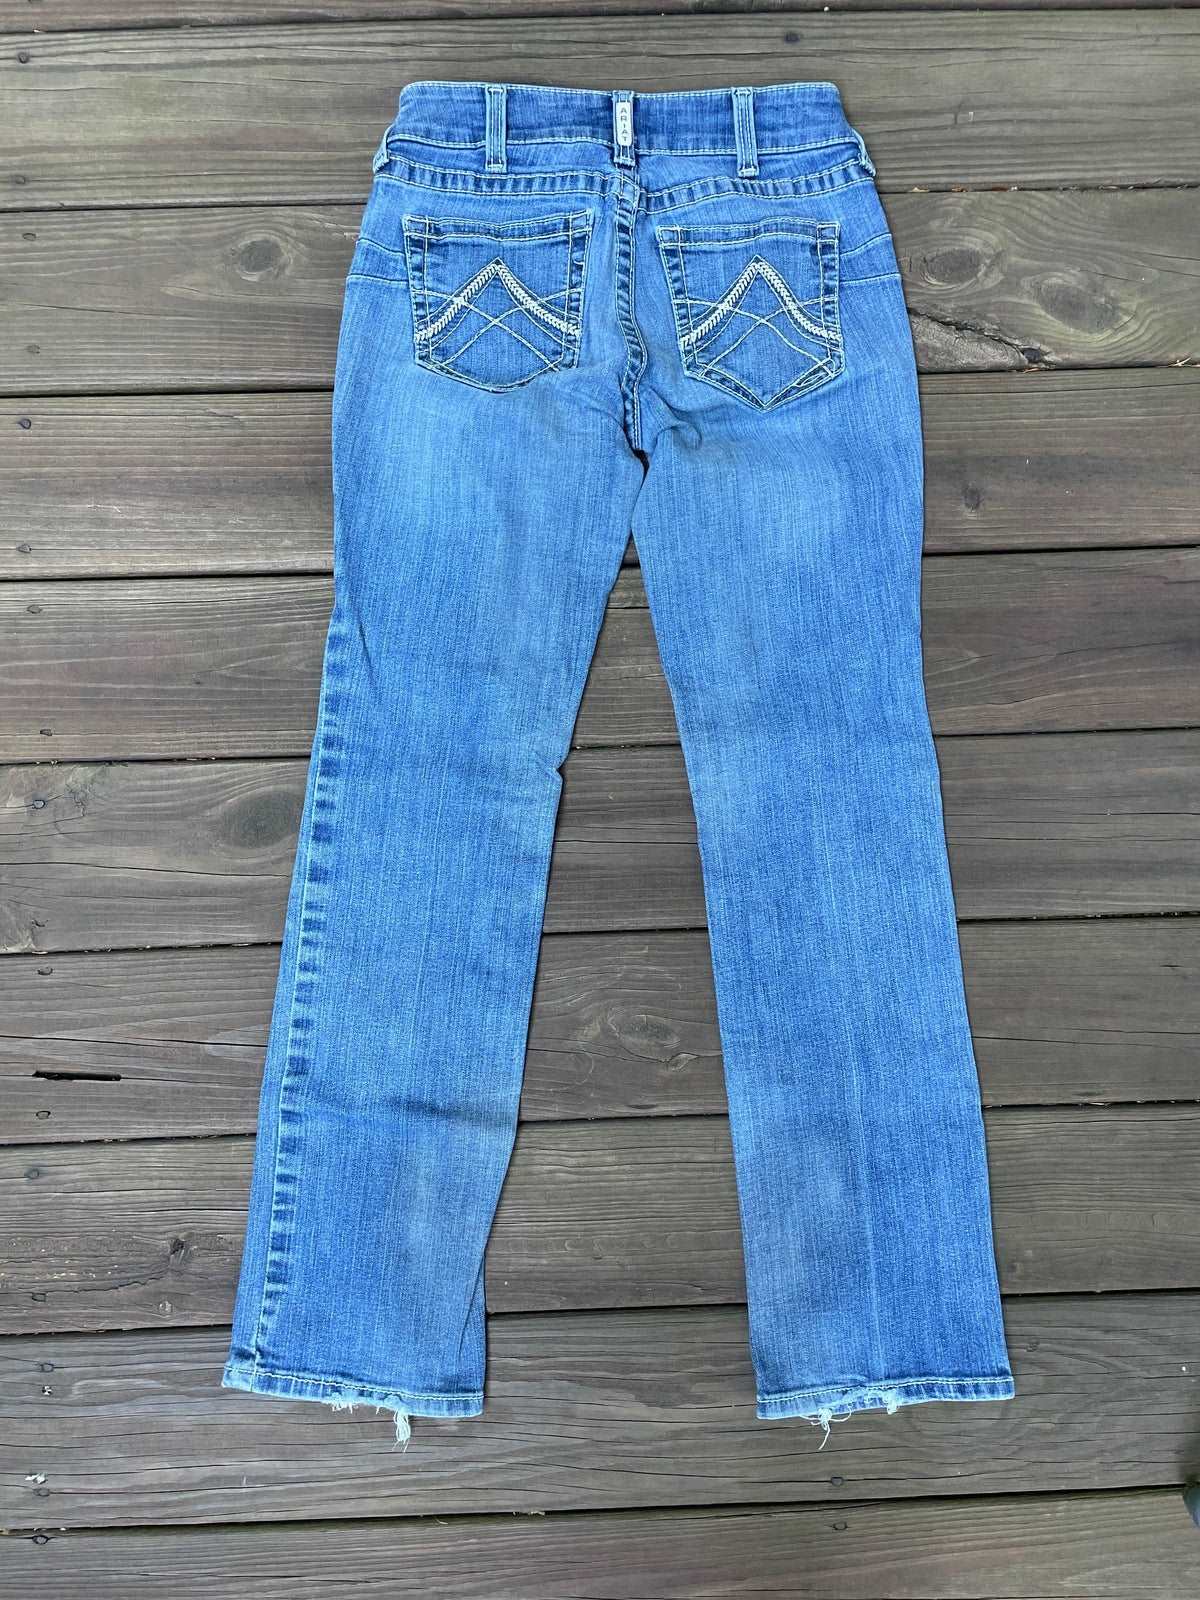 Ariat Real Denim Jeans - 29R –ThriftedEquestrian